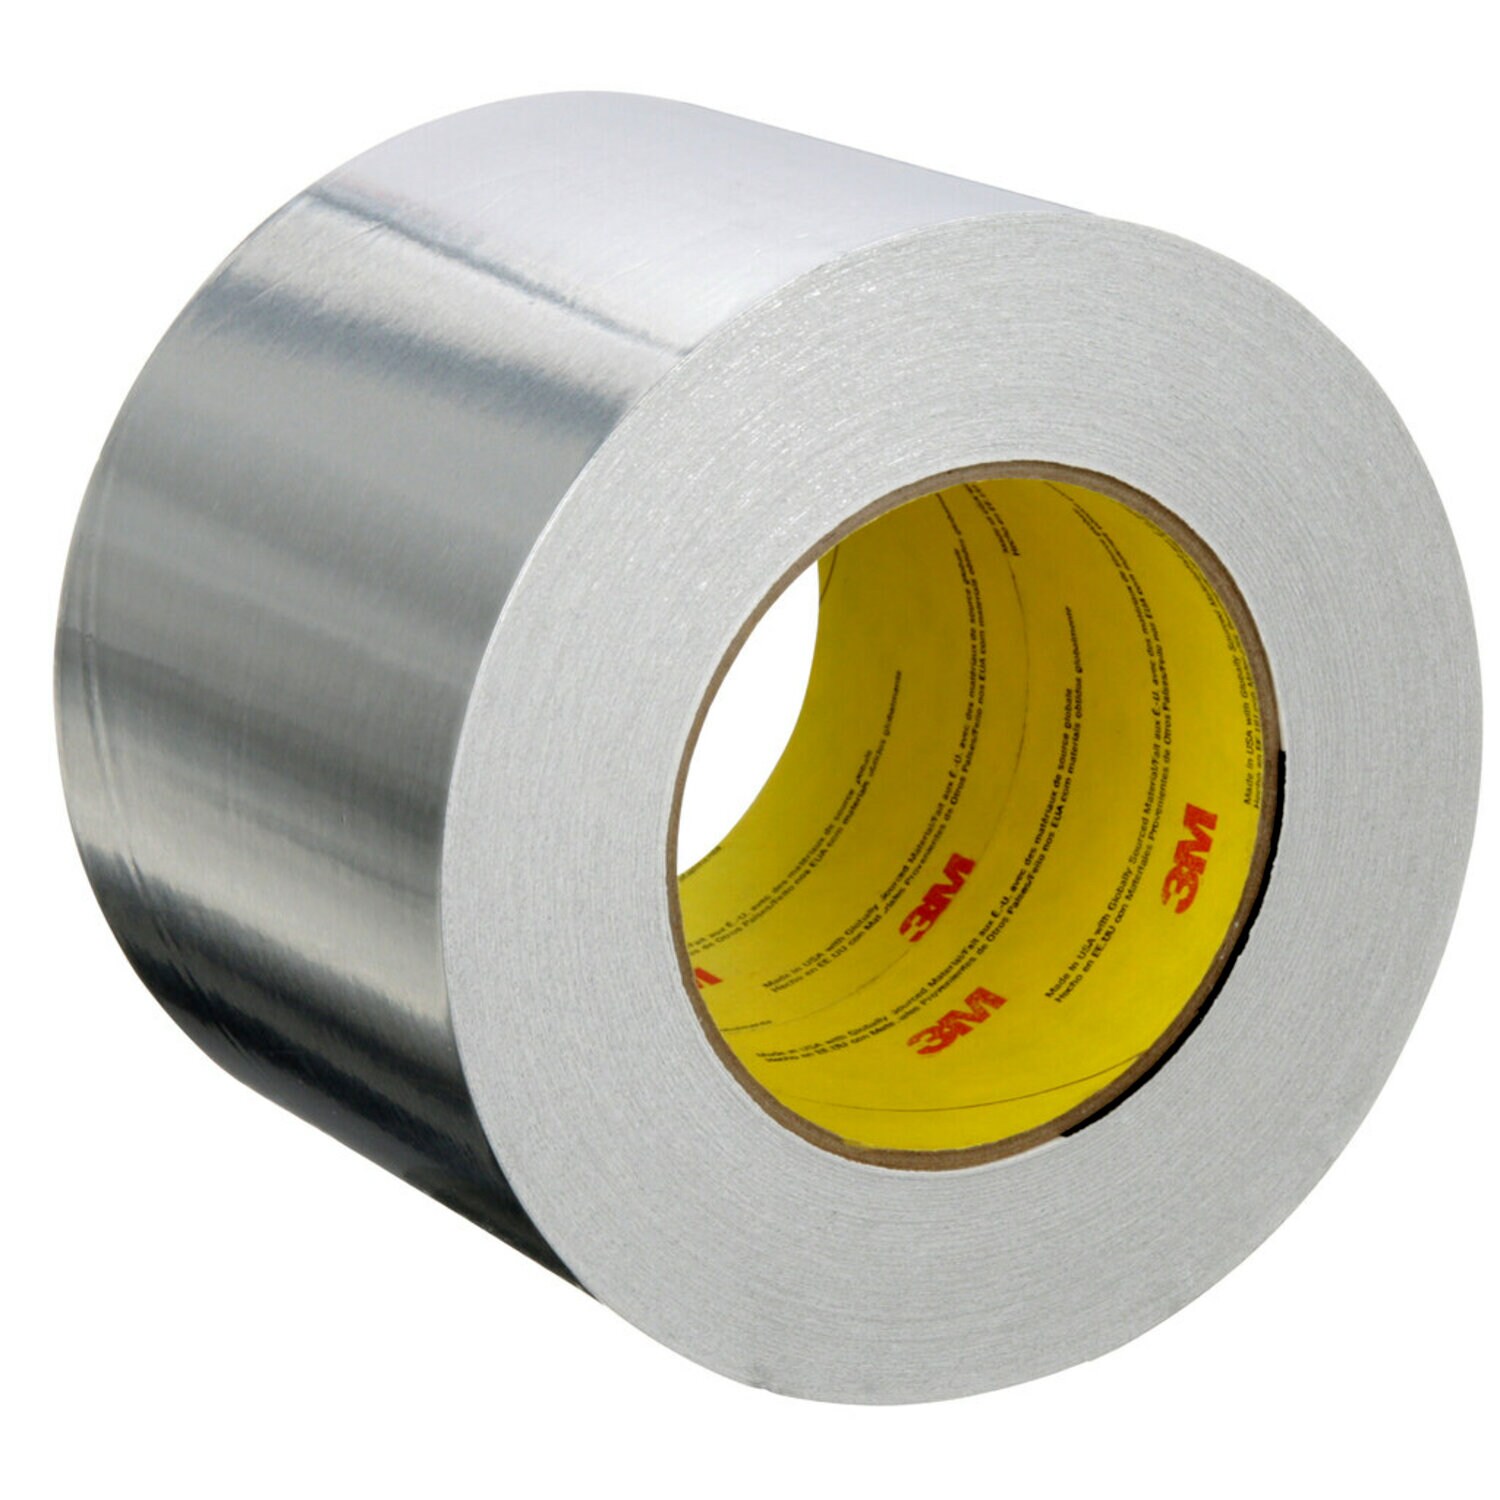 7100043891 - 3M Aluminum Foil Tape 2C120, Silver, 99 mm x 45.7 m, 1.8 mil, 12
Rolls/Case